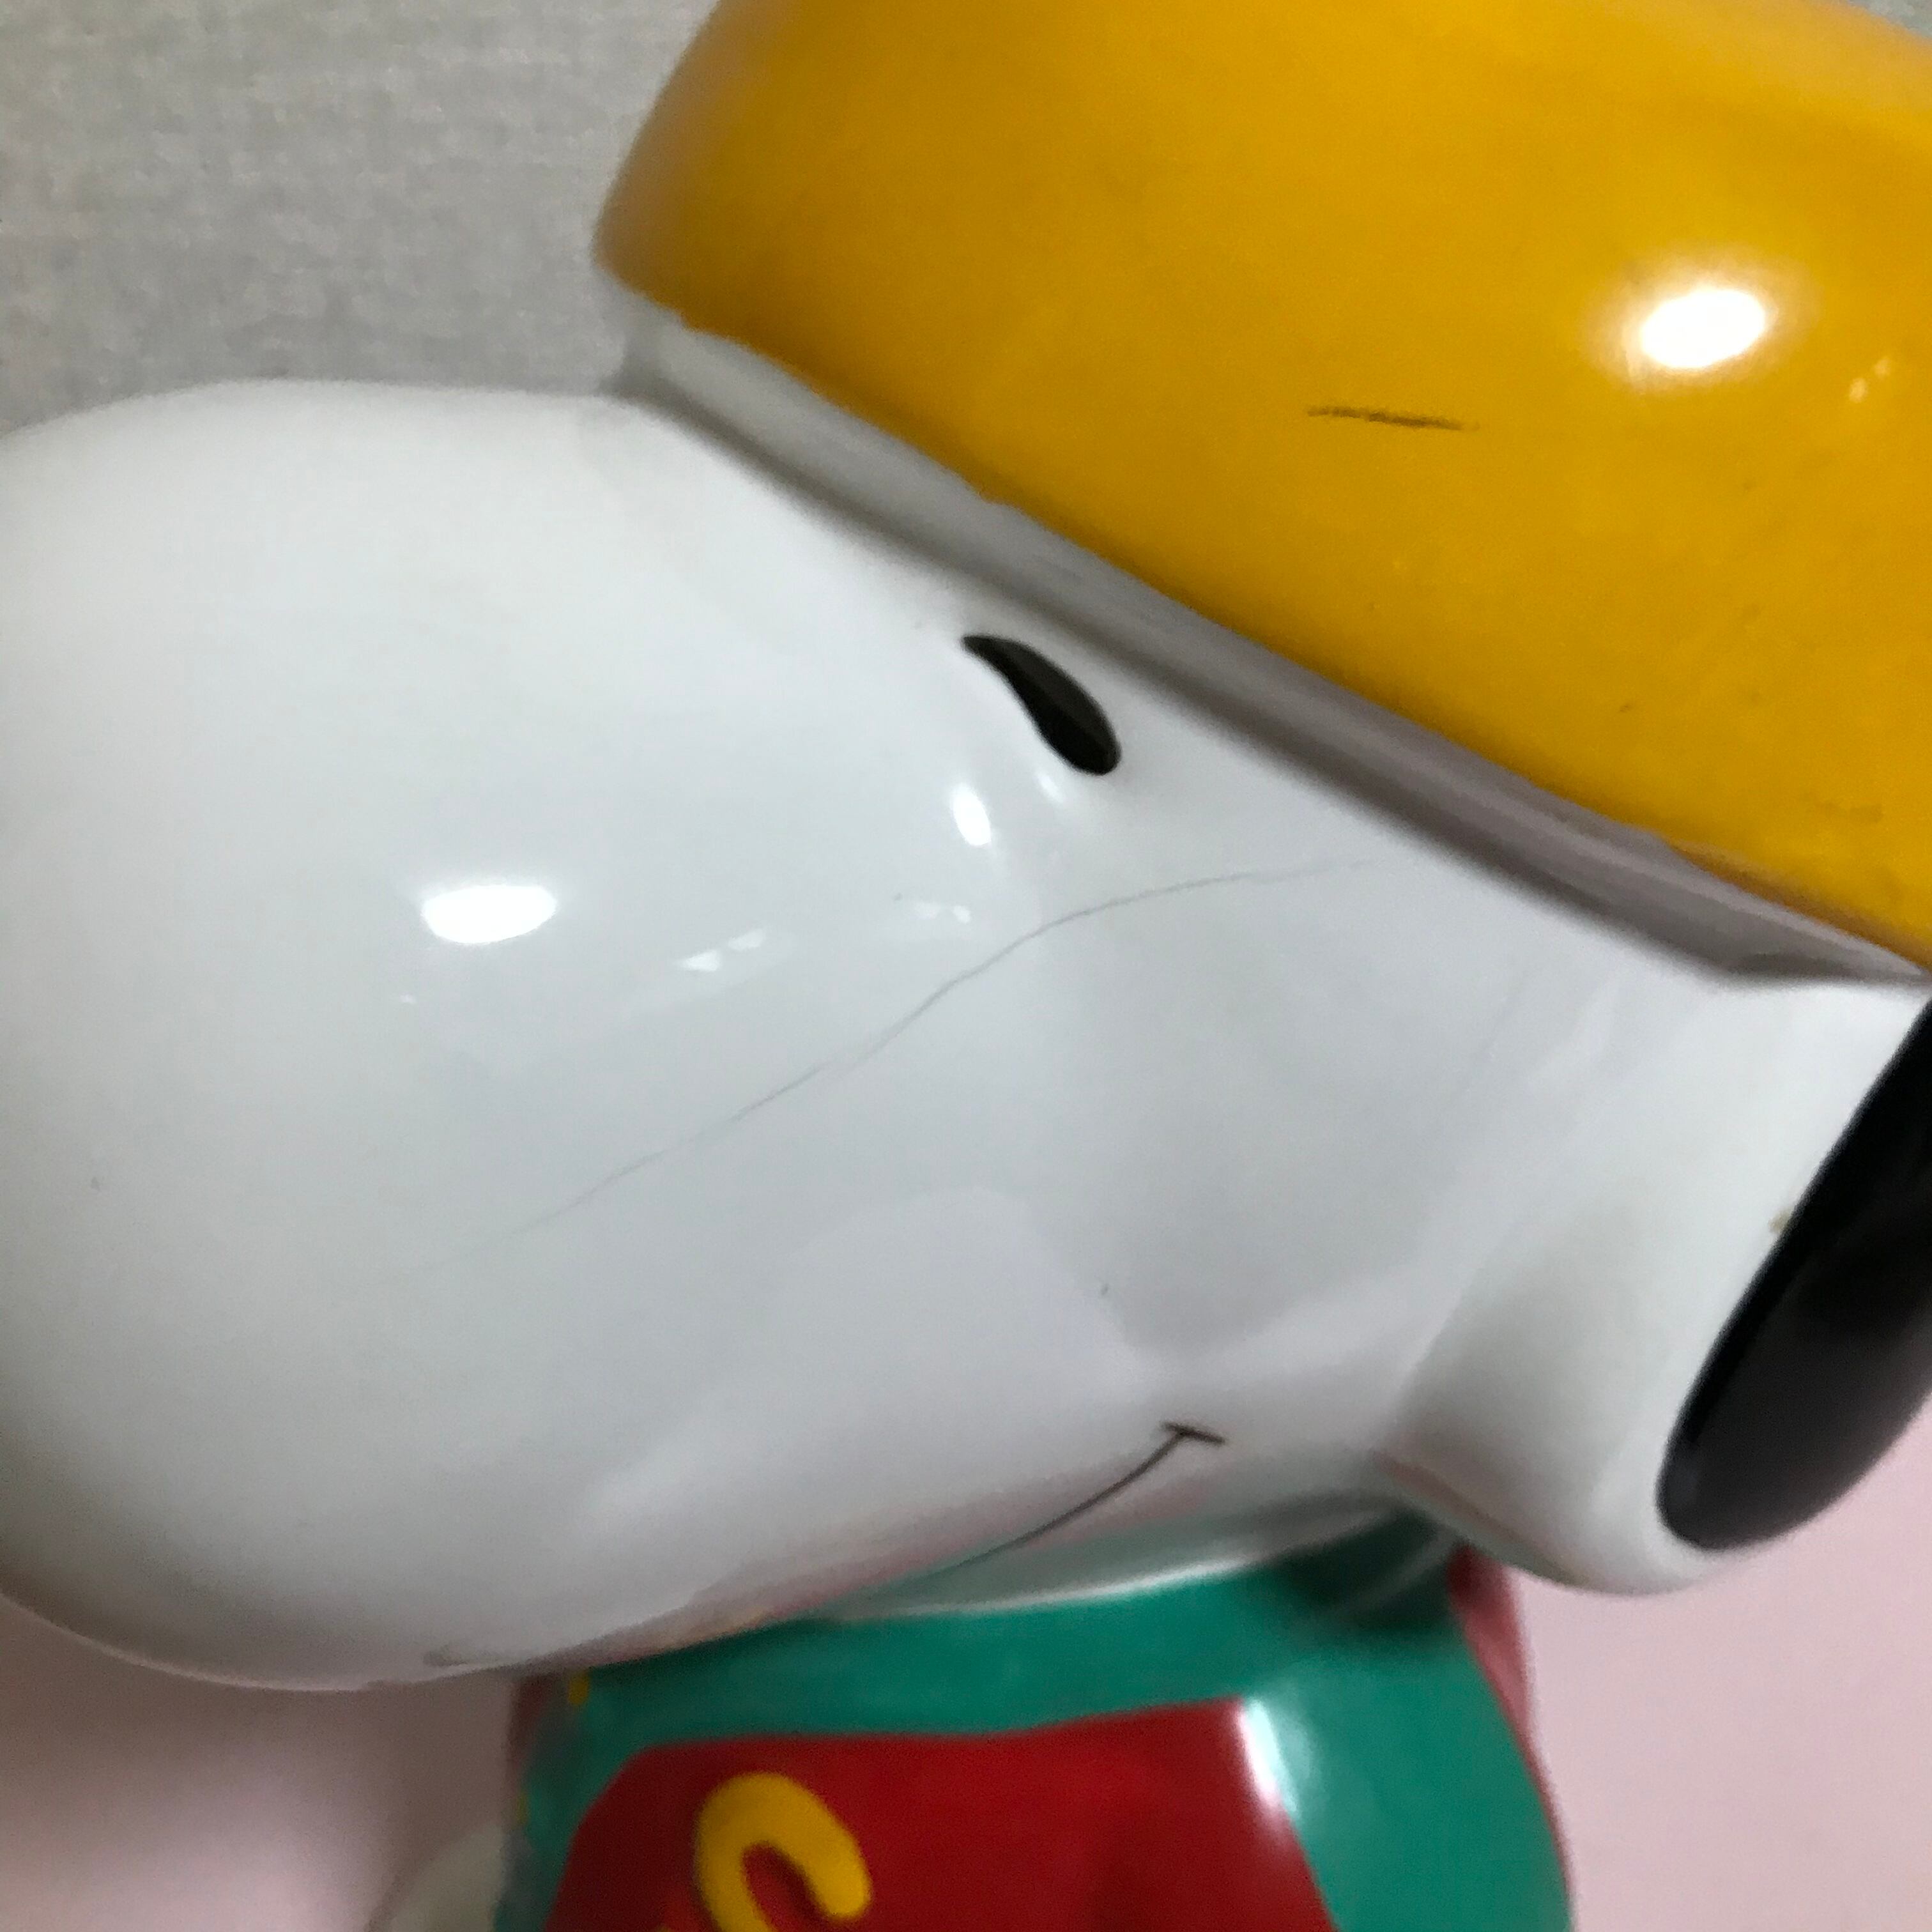 スヌーピー 貯金箱/コインバンク 陶器製 大きい Peanuts Snoopy Vintage Coinbank Ceramic